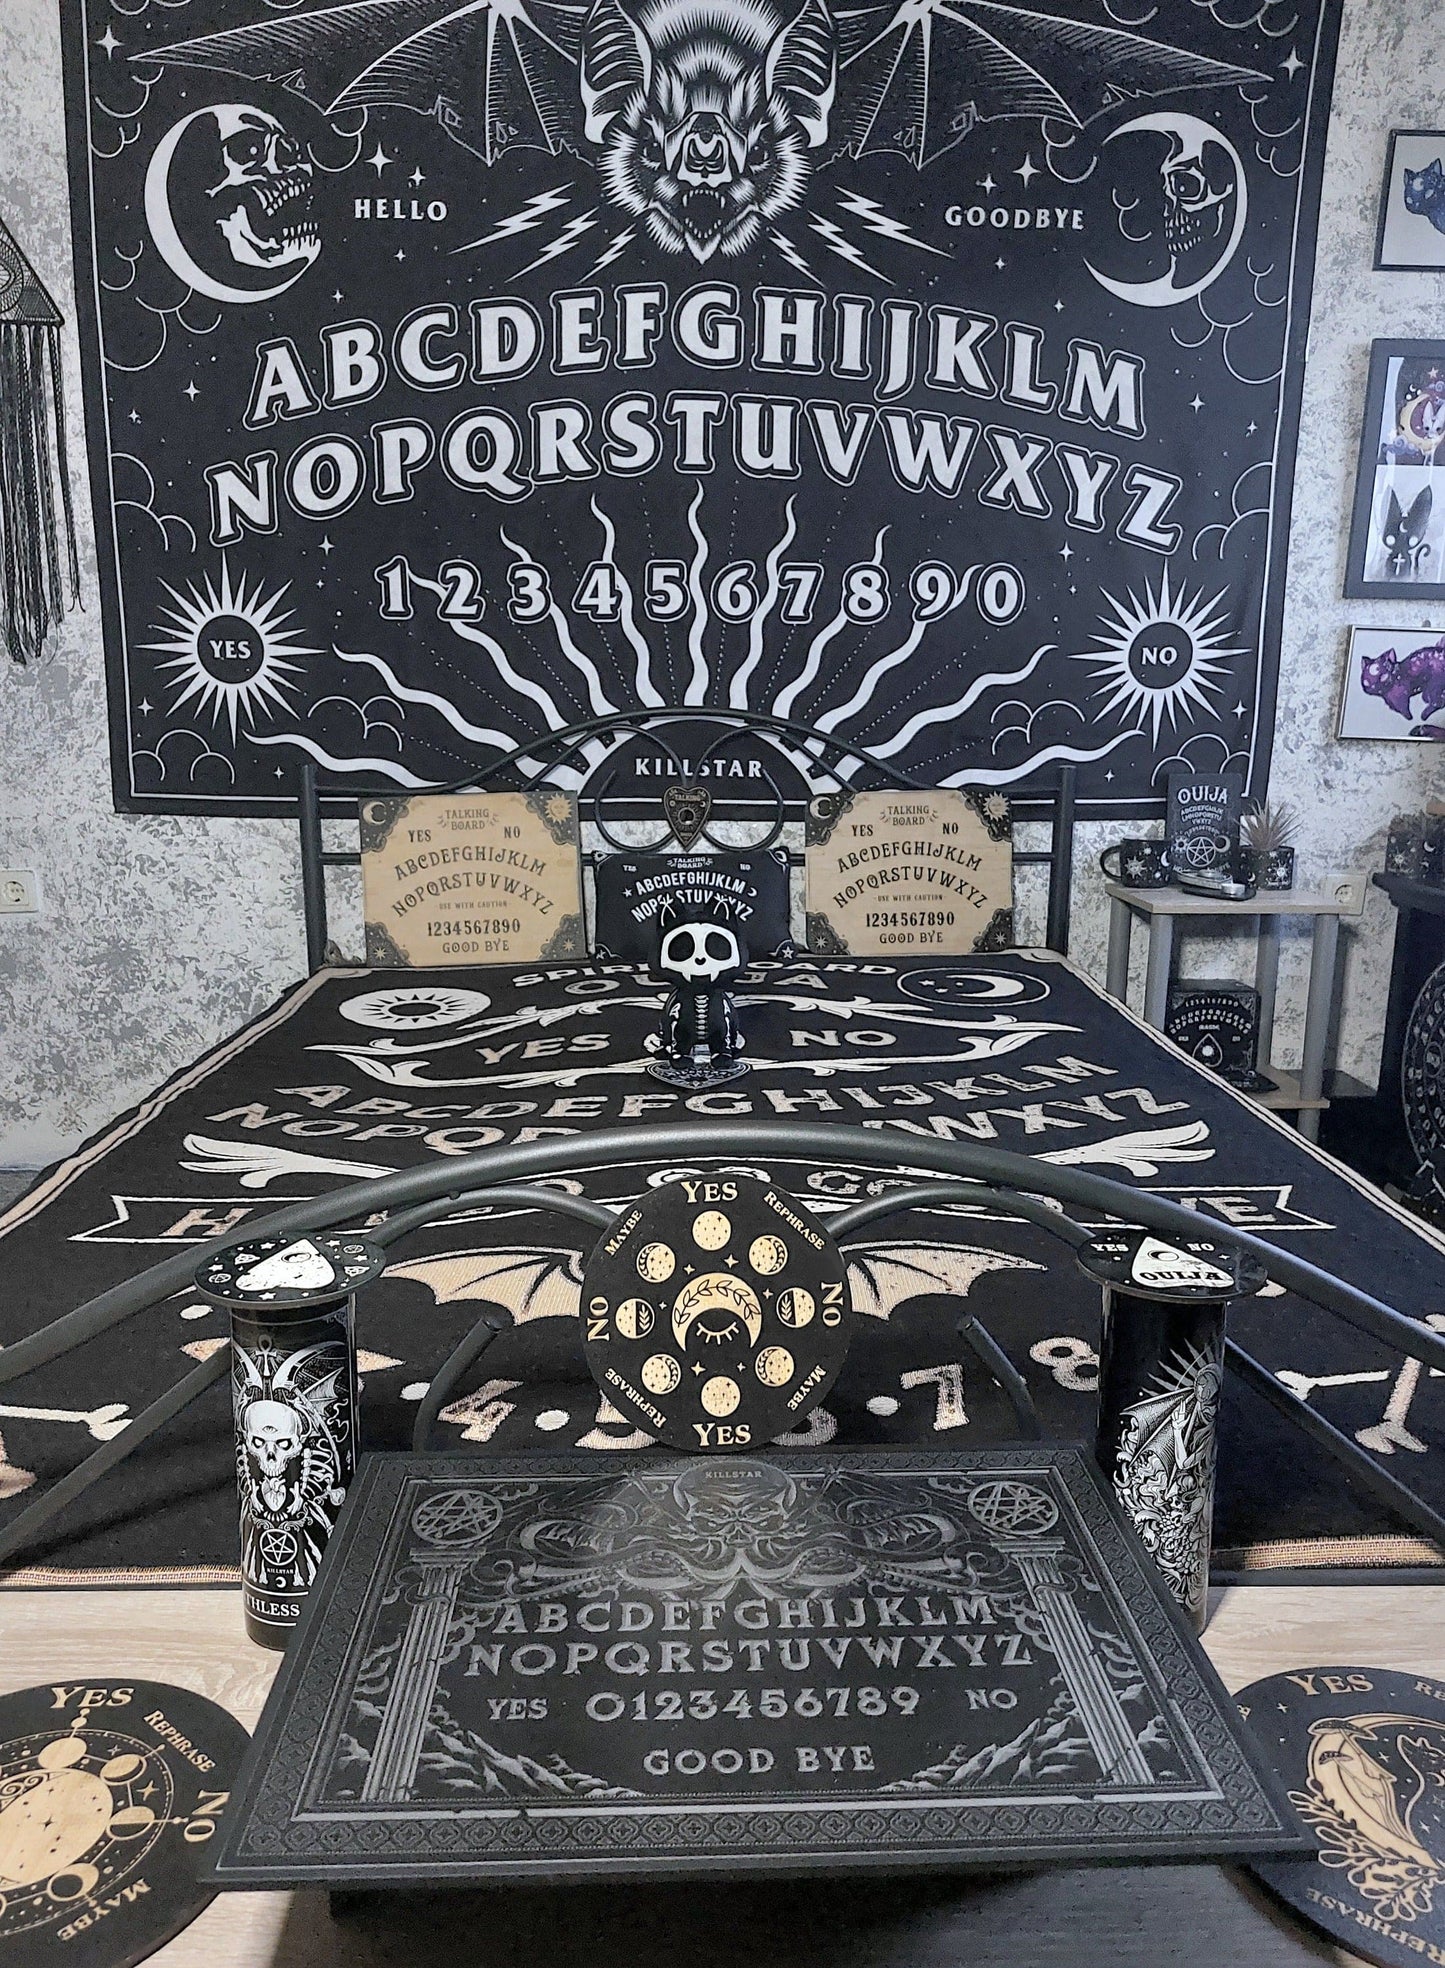 Ouija Board Woven Blanket